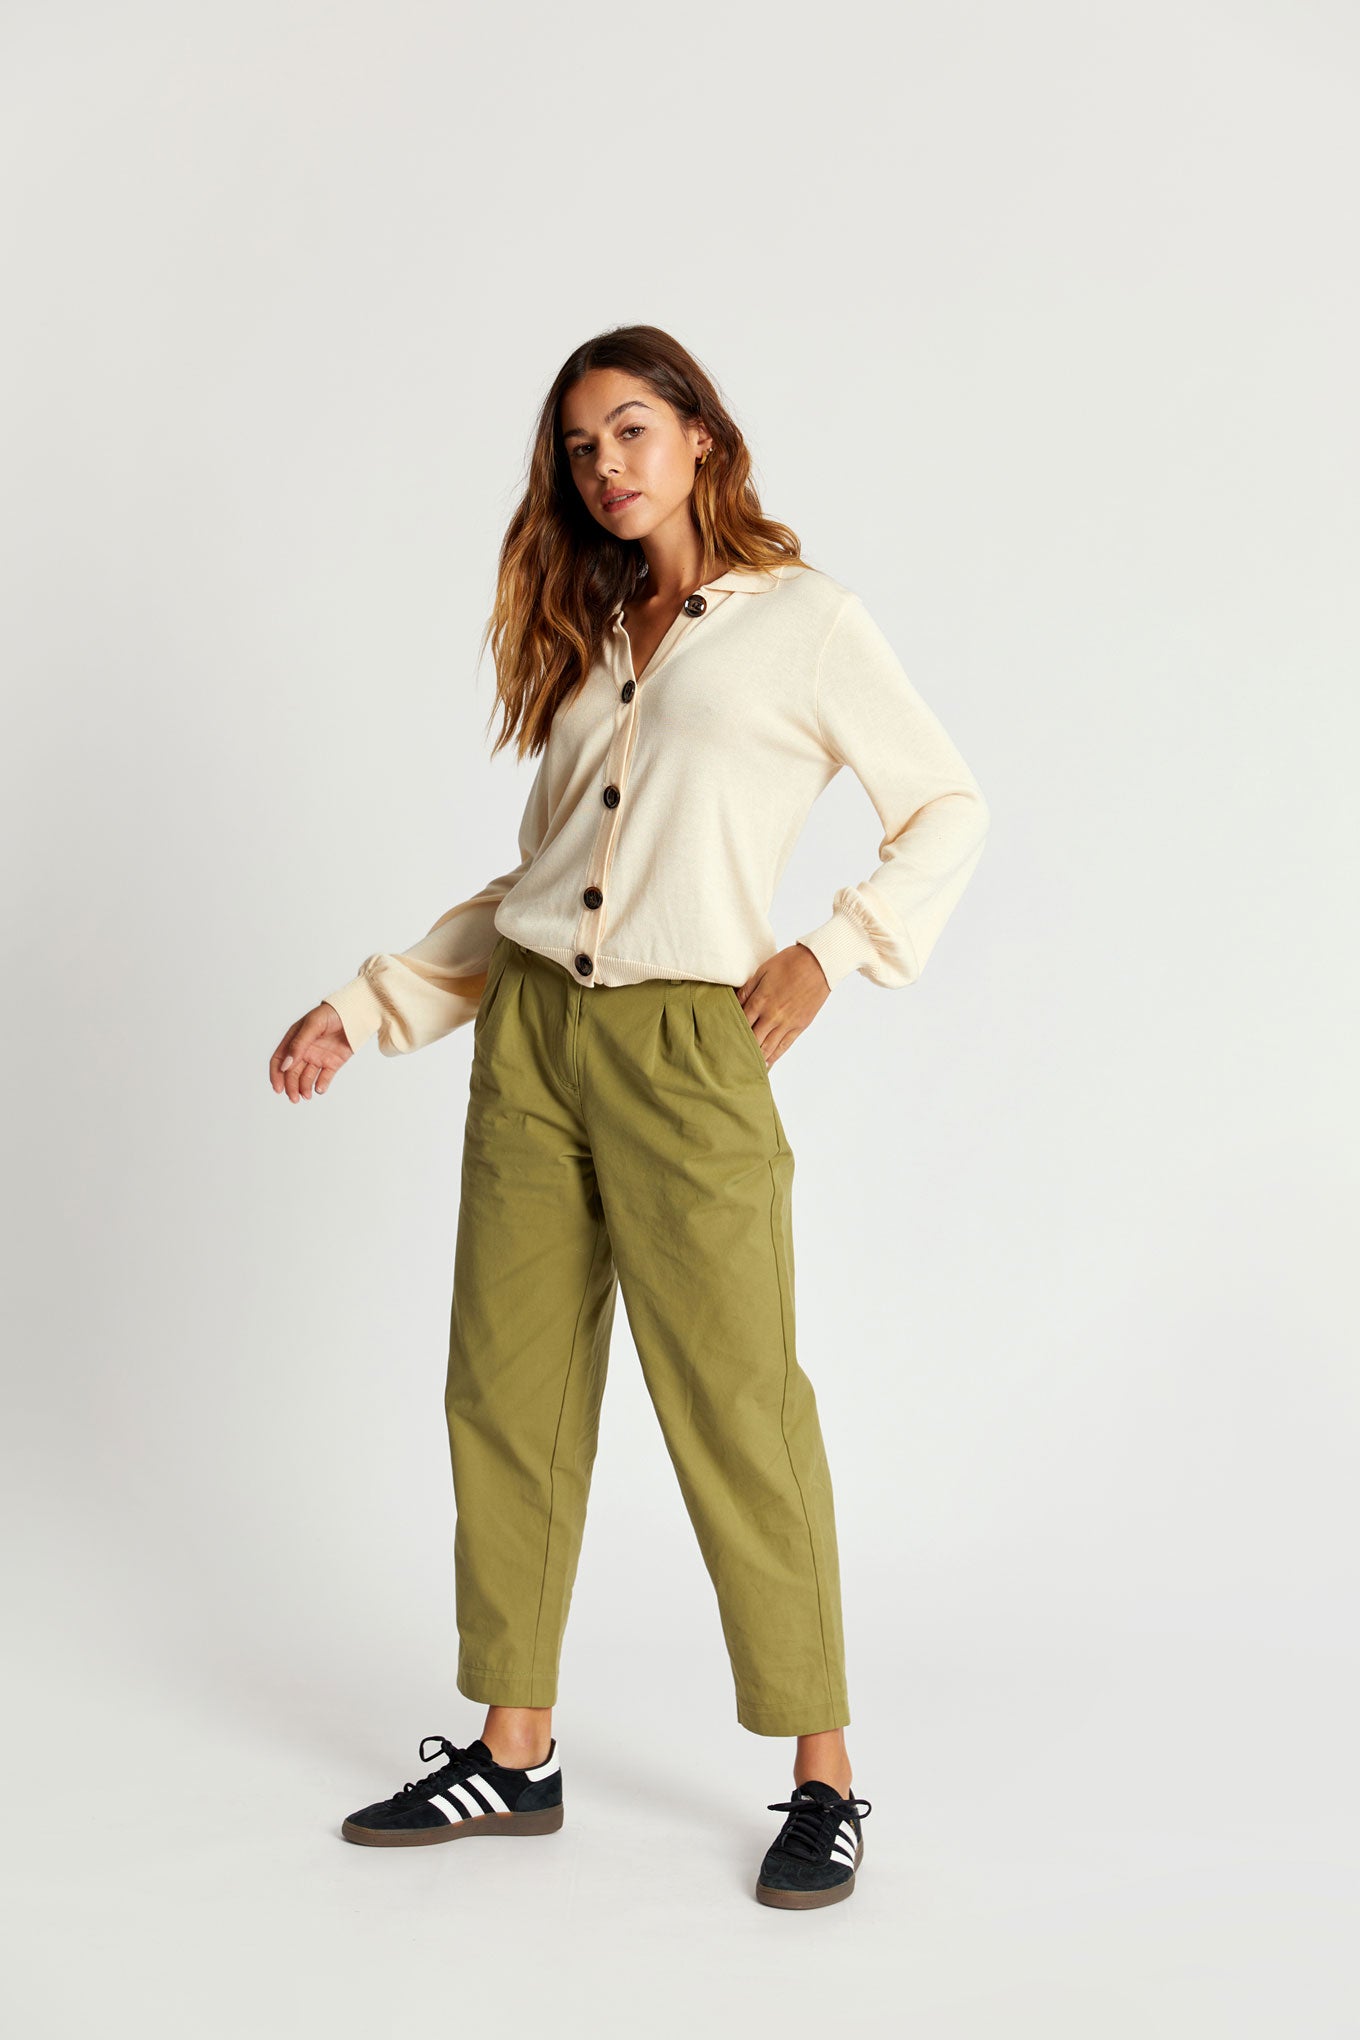 OLIA Organic Cotton Trouser - Khaki Green, SIZE 5 / UK 16 / EUR 44